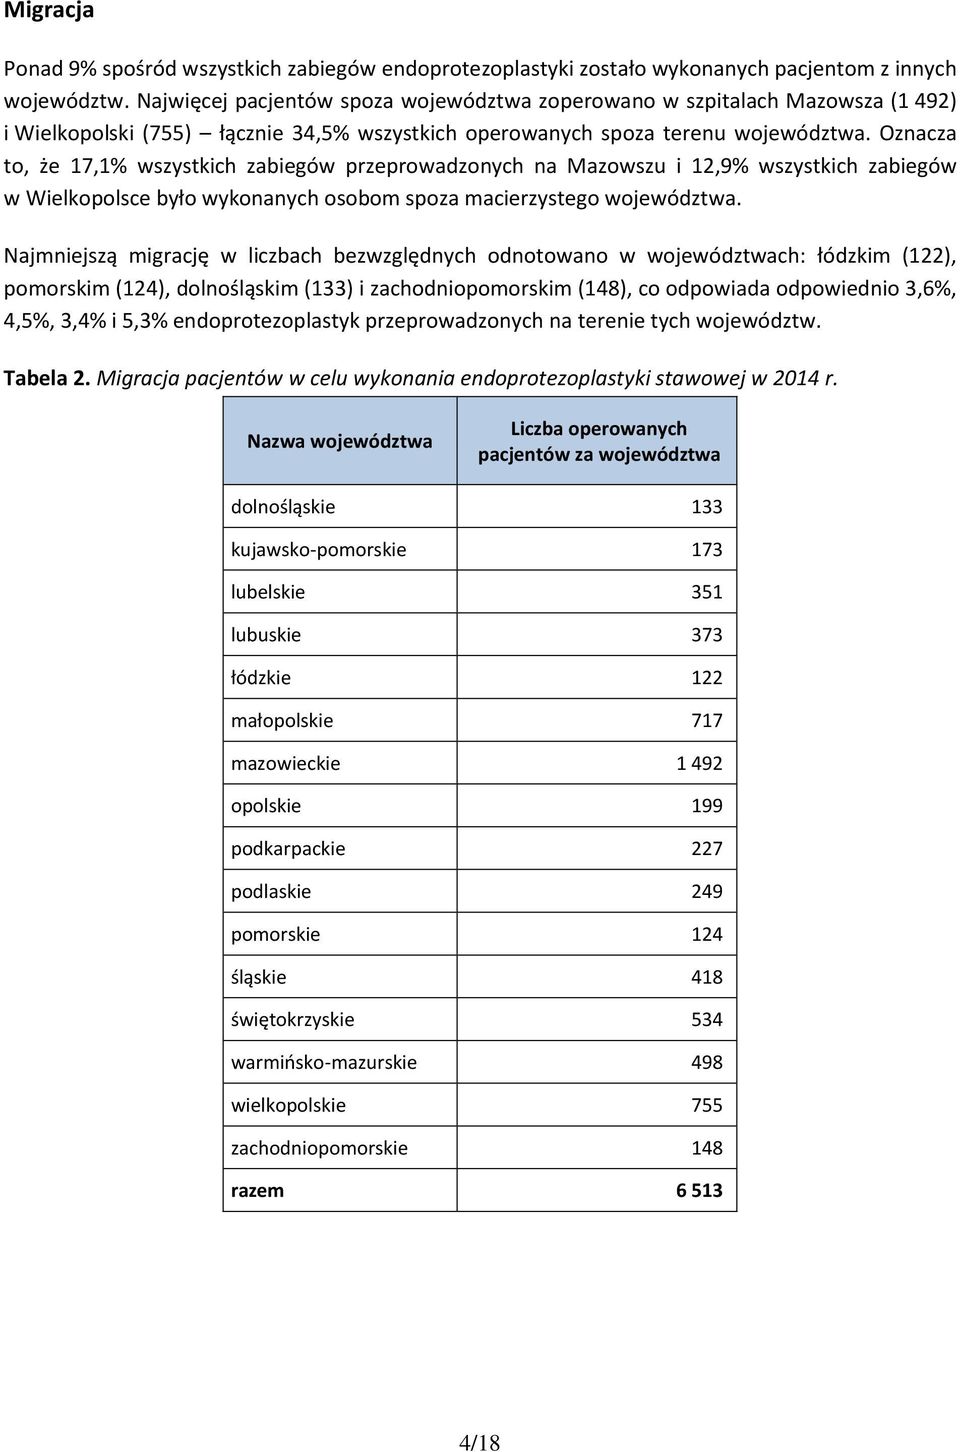 Oznacza to, że 17,1% wszystkich zabiegów przeprowadzonych na Mazowszu i 12,9% wszystkich zabiegów w Wielkopolsce było wykonanych osobom spoza macierzystego województwa.